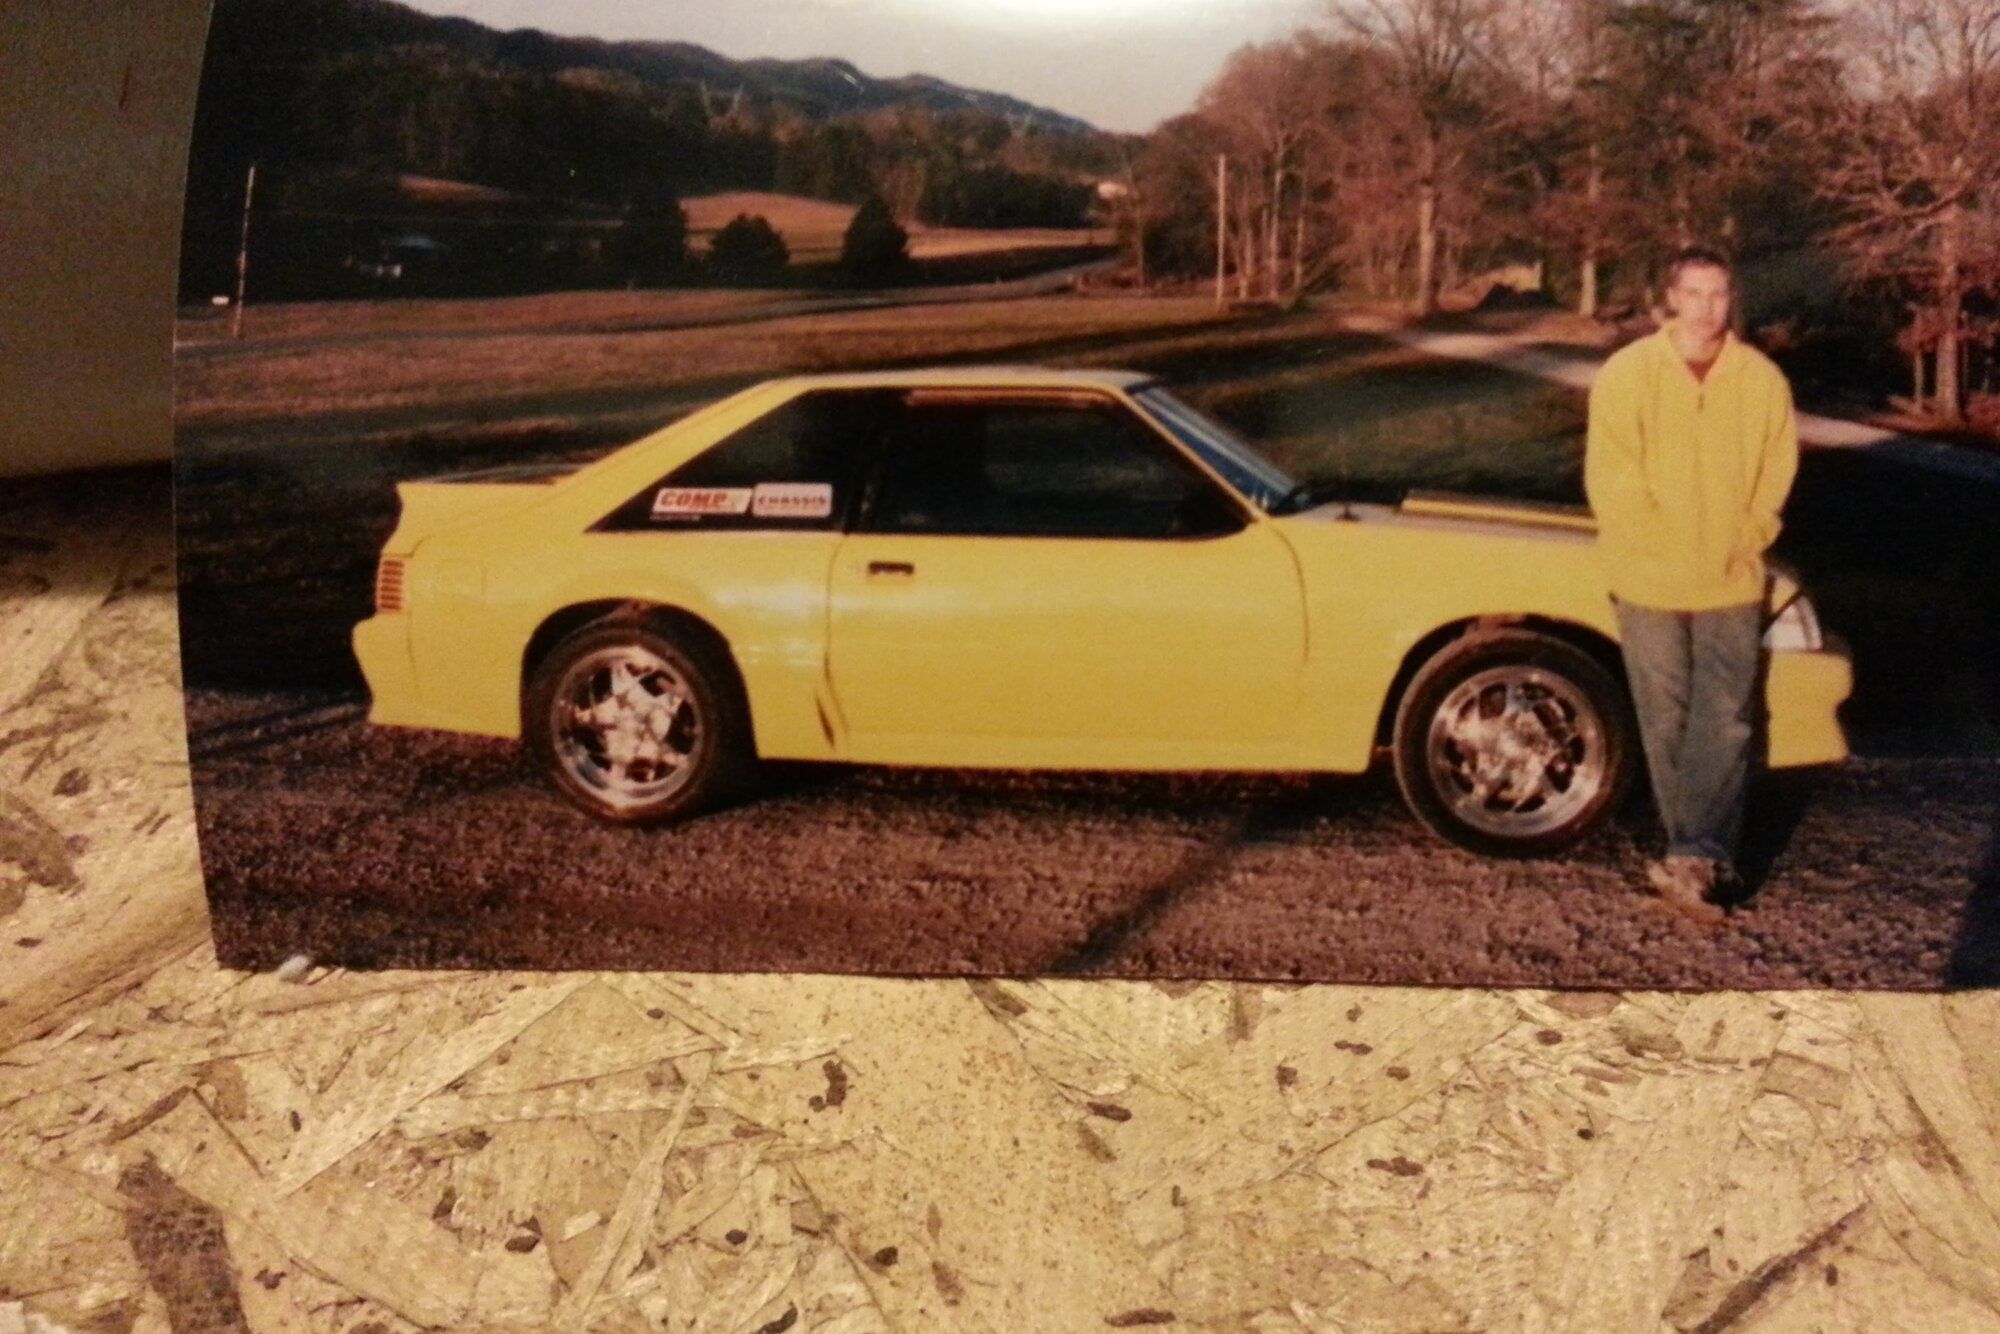 1989 Mustang
HPDE/Track -  (The 500 hp Banana)